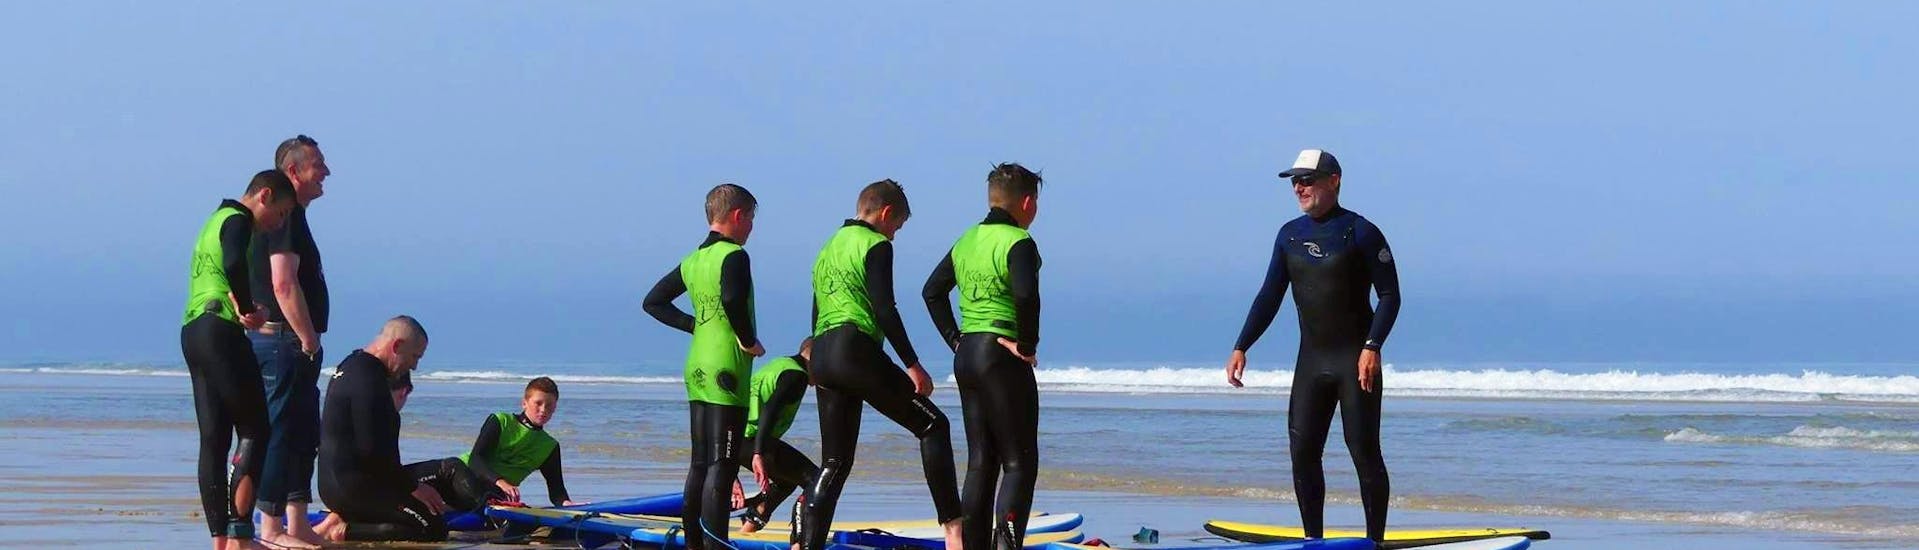 Surfer machen sich bereit für ihre Surfkurse "Family Package" am Messanges South Beach mit der Messanges Surf School.